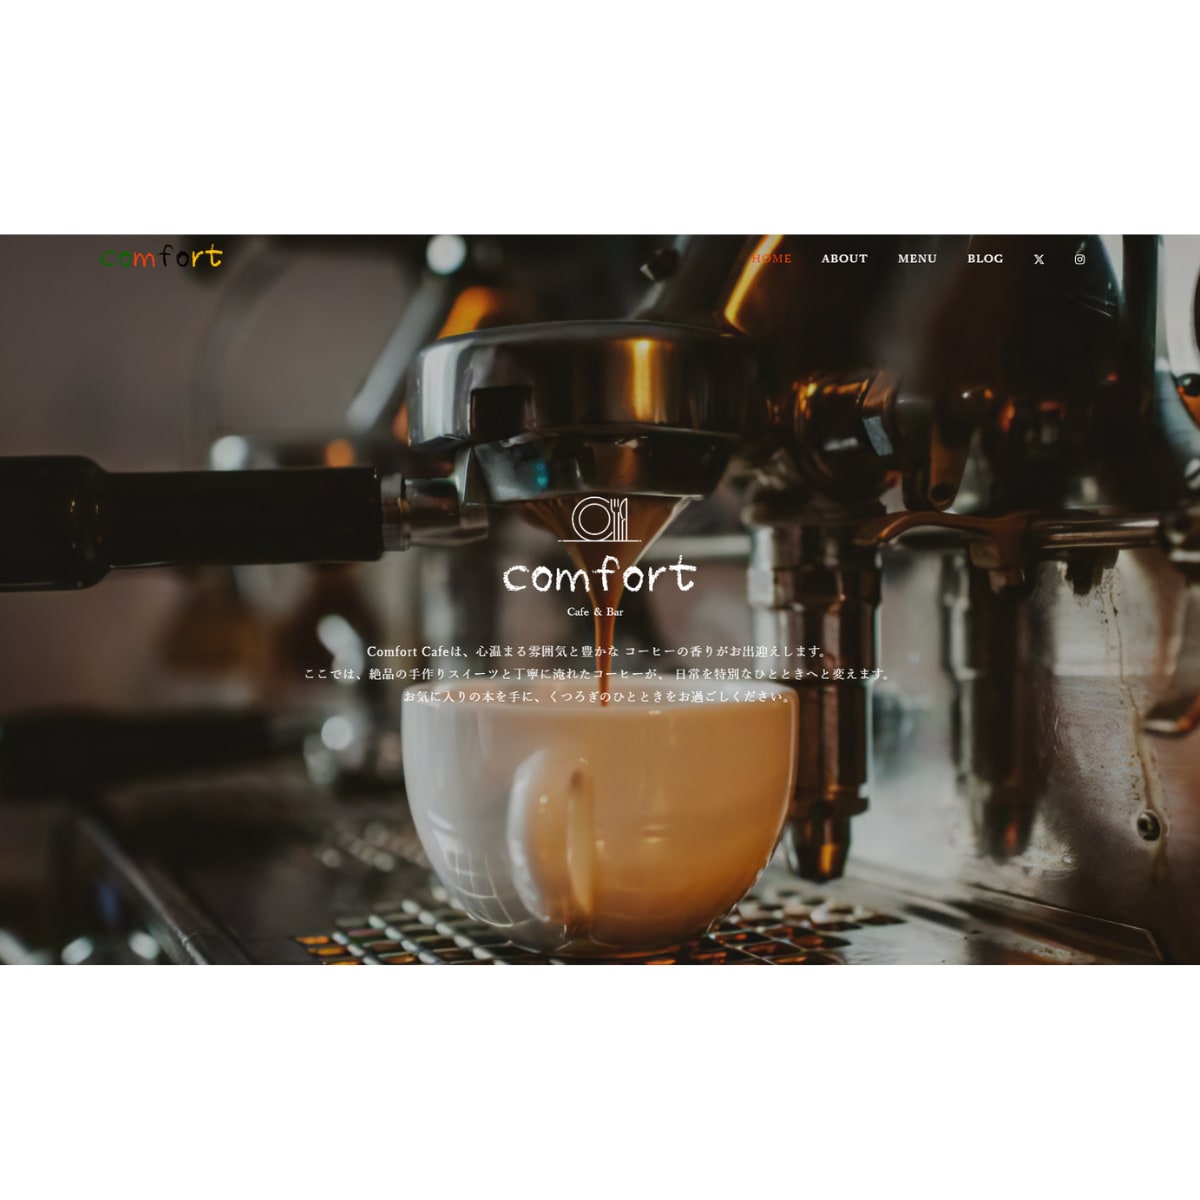 カフェのホームページを作成しました